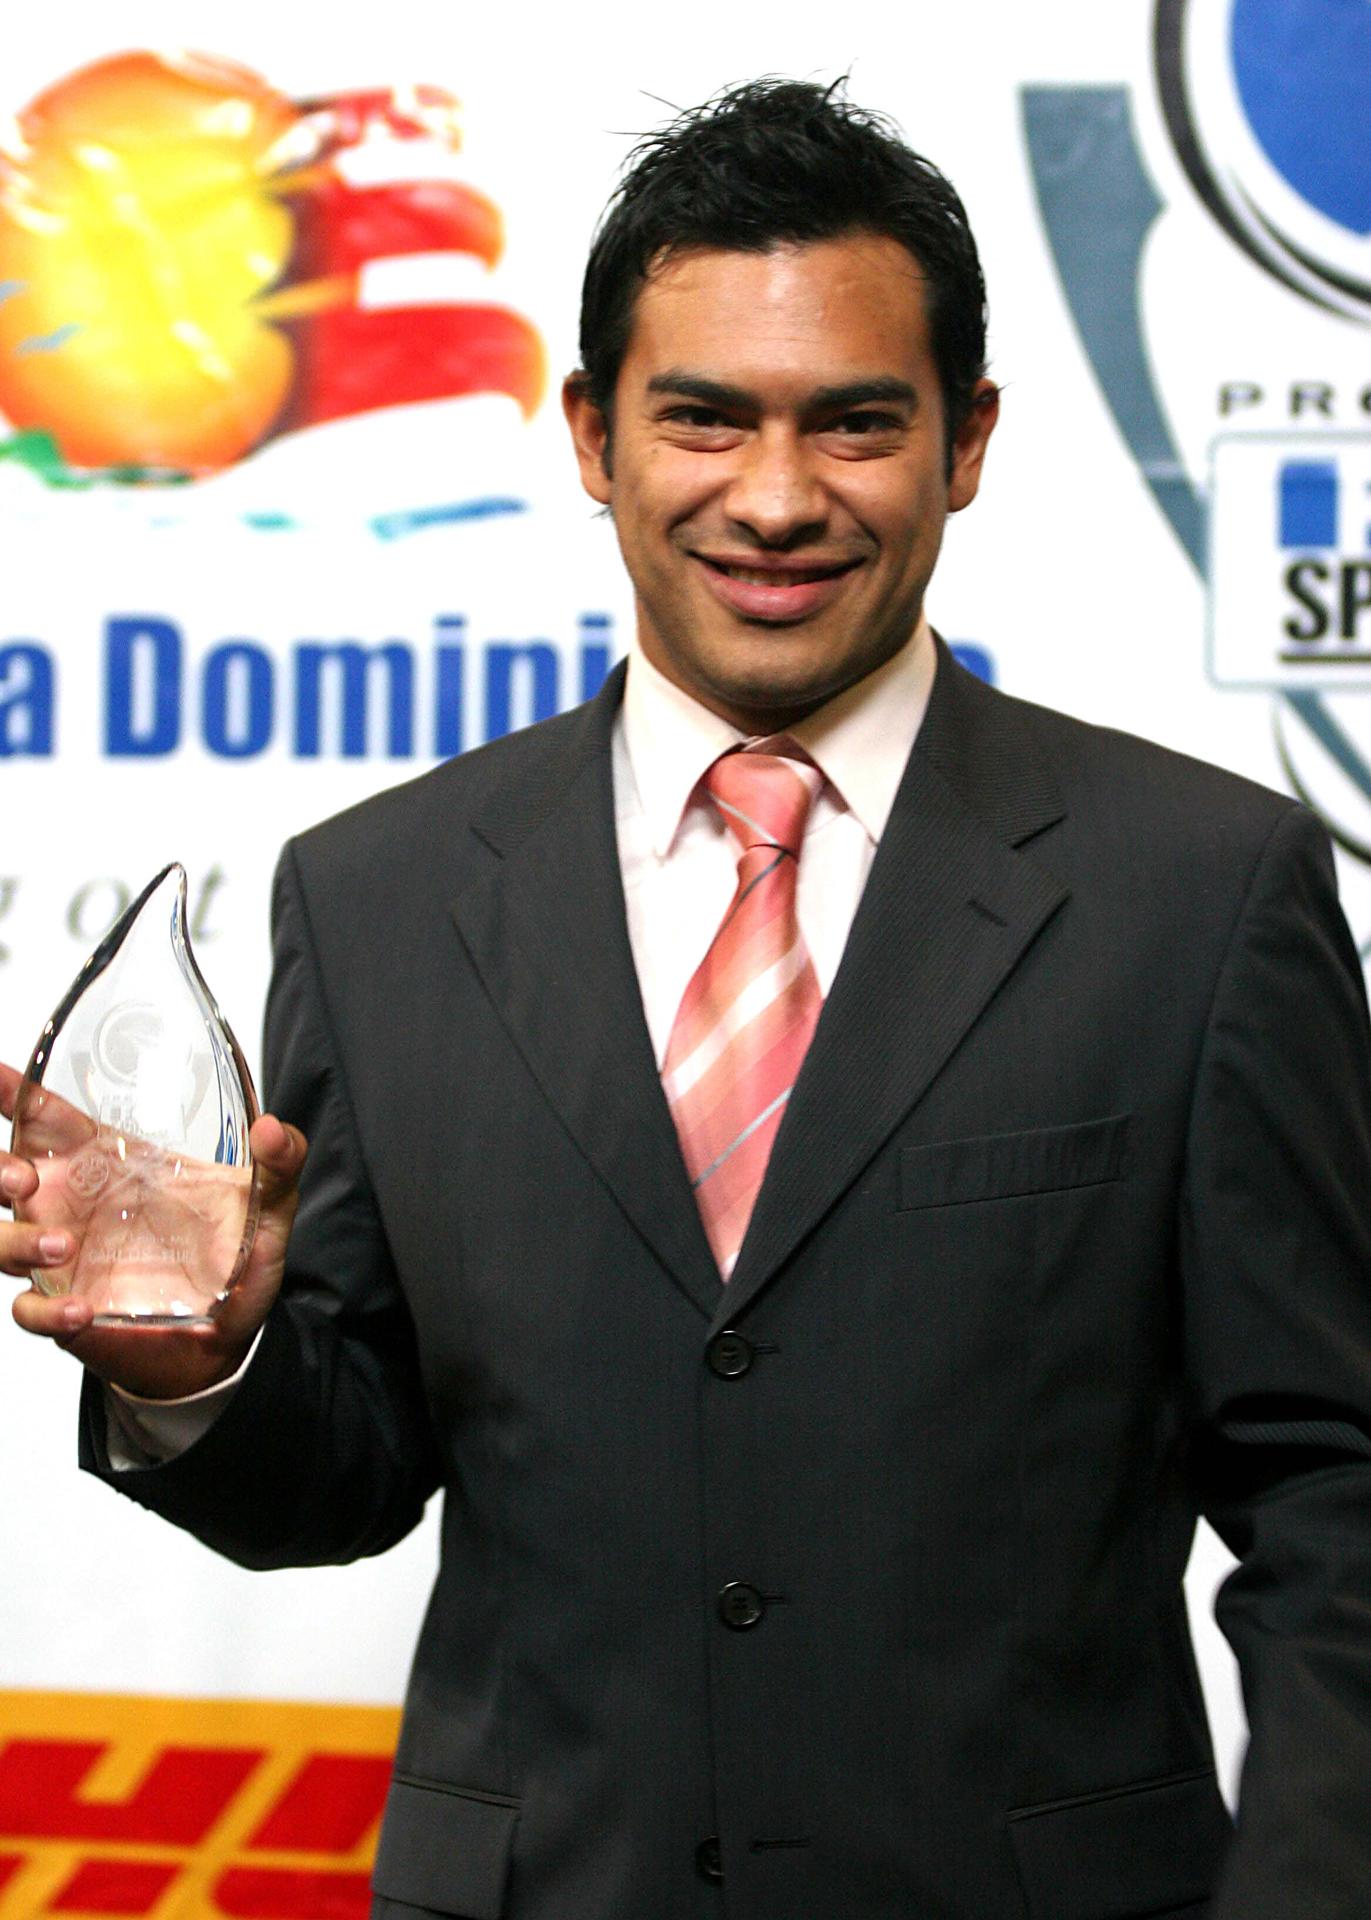 Fotografía de archivo fechada el 5 de diciembre de 2005 del exfutbolista guatemalteco Carlitos "El Pescadito" Ruiz durante la tercera entrega de los Premios Fox en Miami, Florida. EFE/Zayra Morales